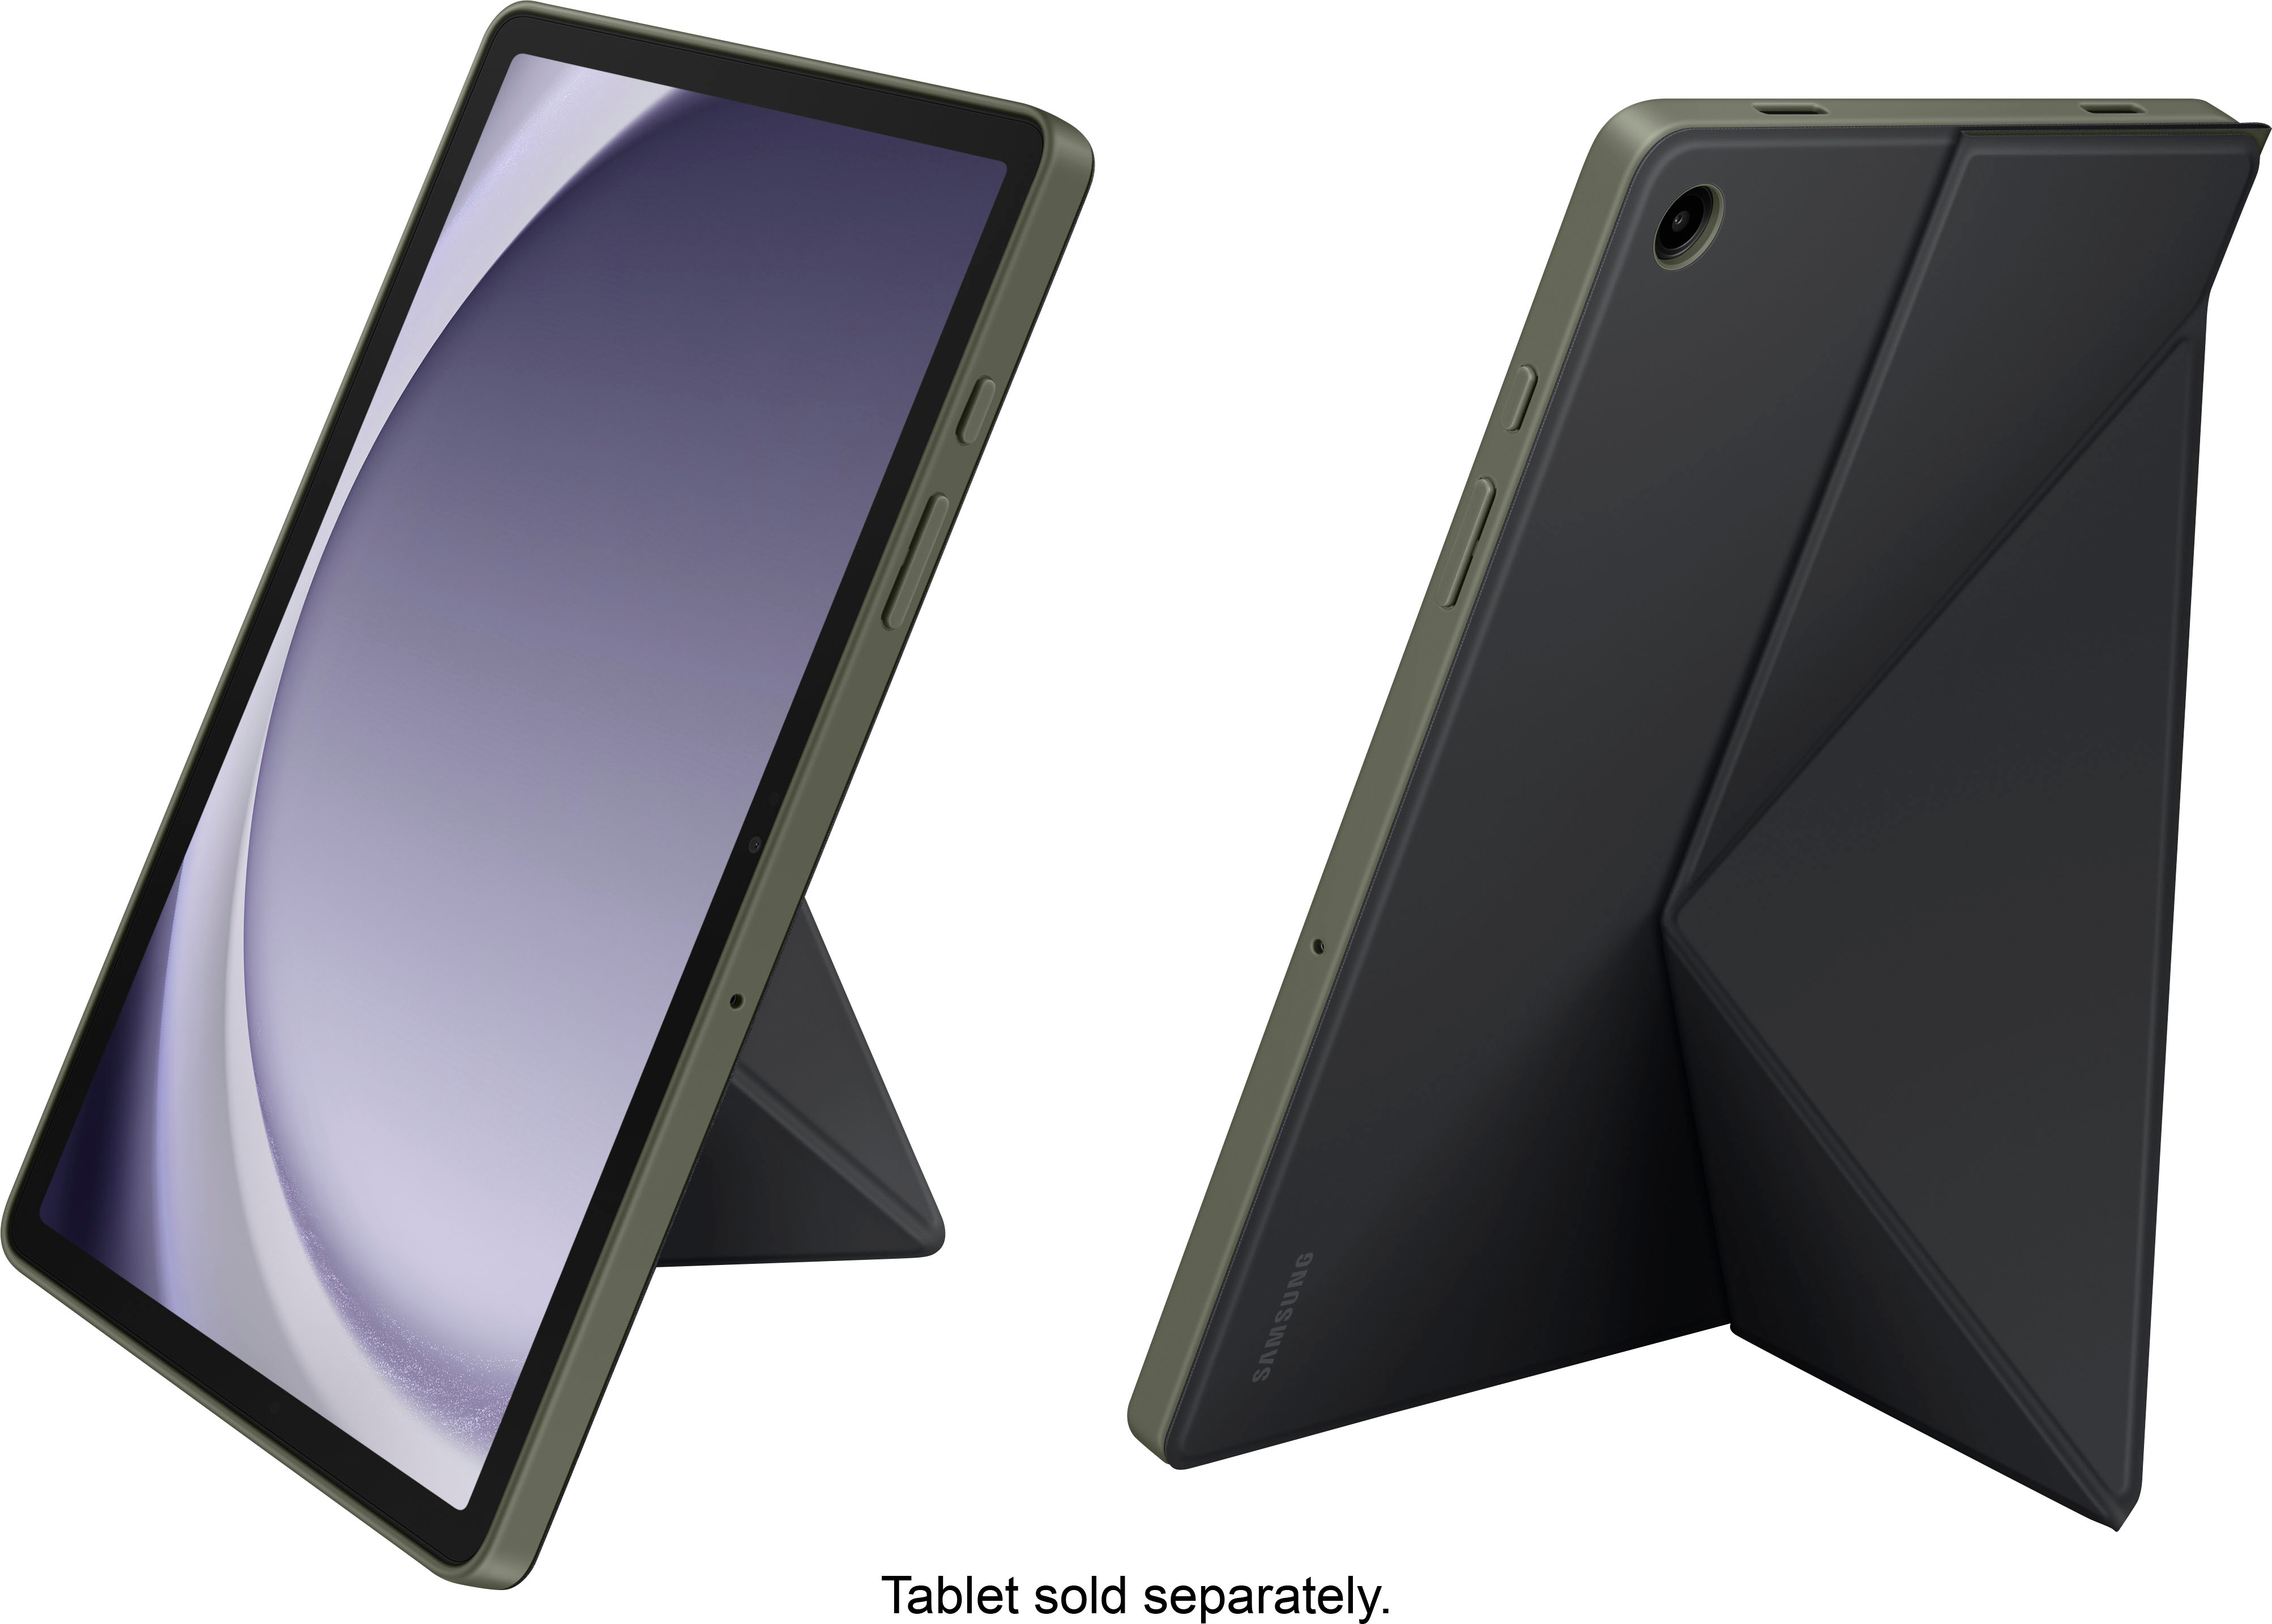 Samsung Galaxy Tab A9 Book Cover Noir (pour Samsung Galaxy Tab A9